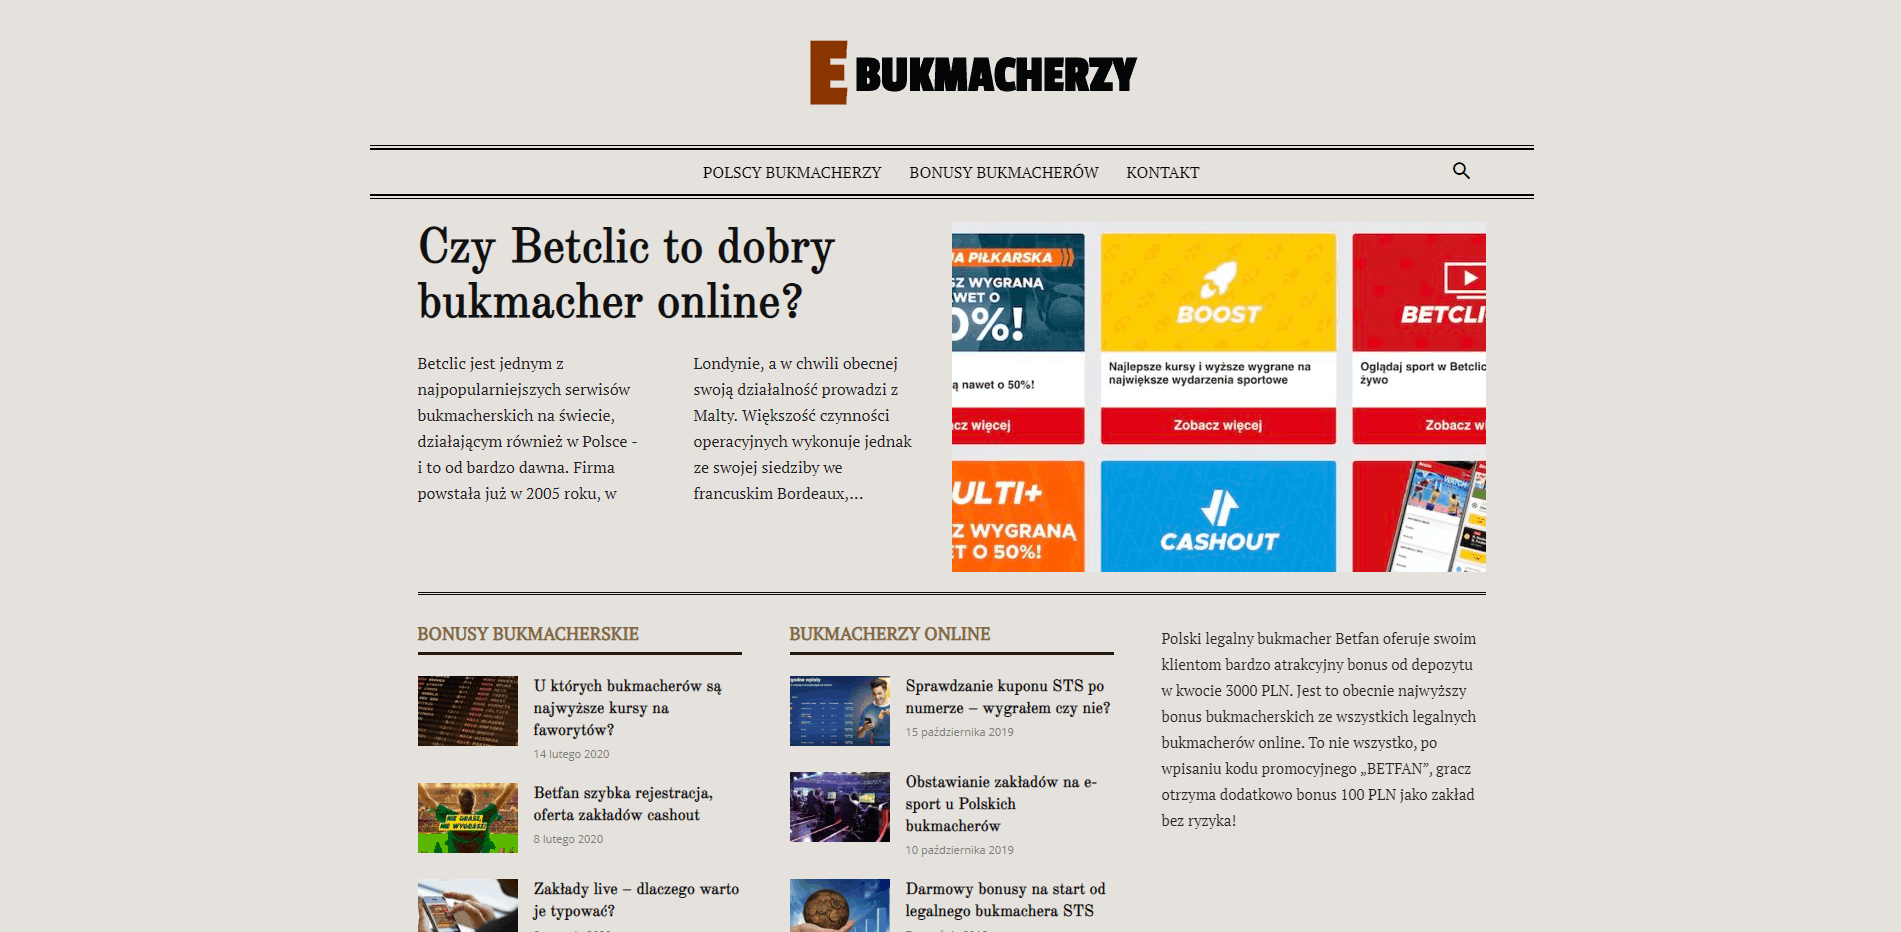 E-BUKMACHERZY.COM.PL